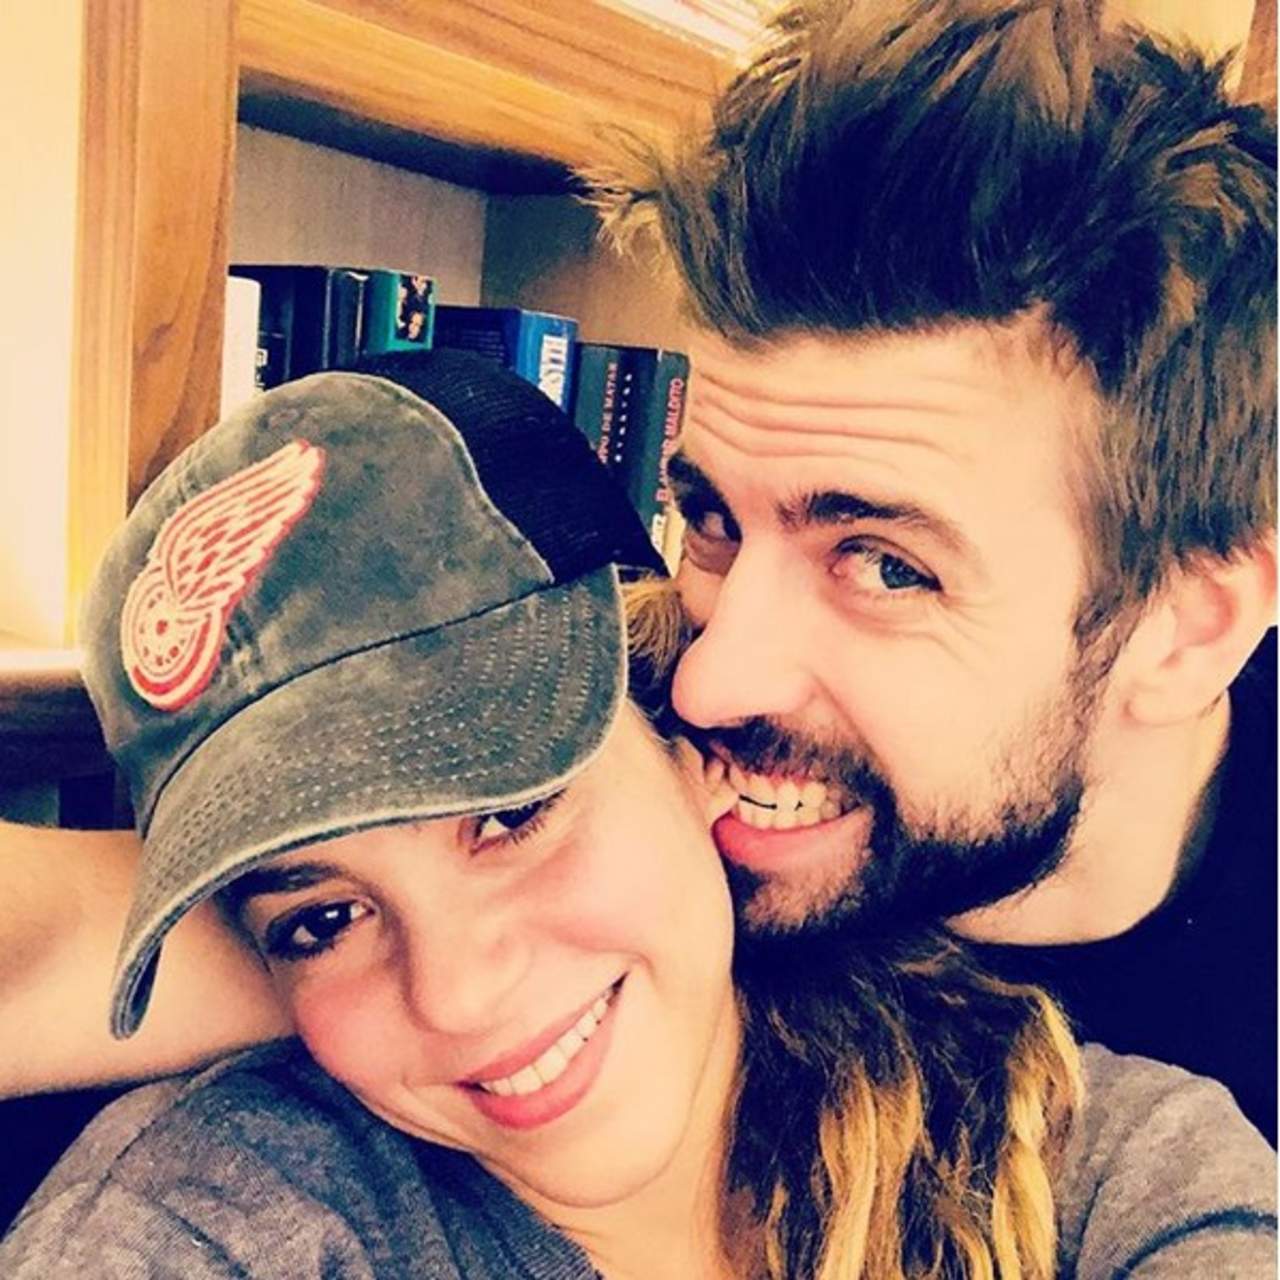 Tras las especulaciones que aseguraban que Shakira y Piqué atravesaban por una fuerte crisis sentimental a causa de una posible infidelidad del futbolista con una ex, la famosa ha recurrido a las redes sociales para responder a estos señalamientos. (AGENCIA MÉXICO)